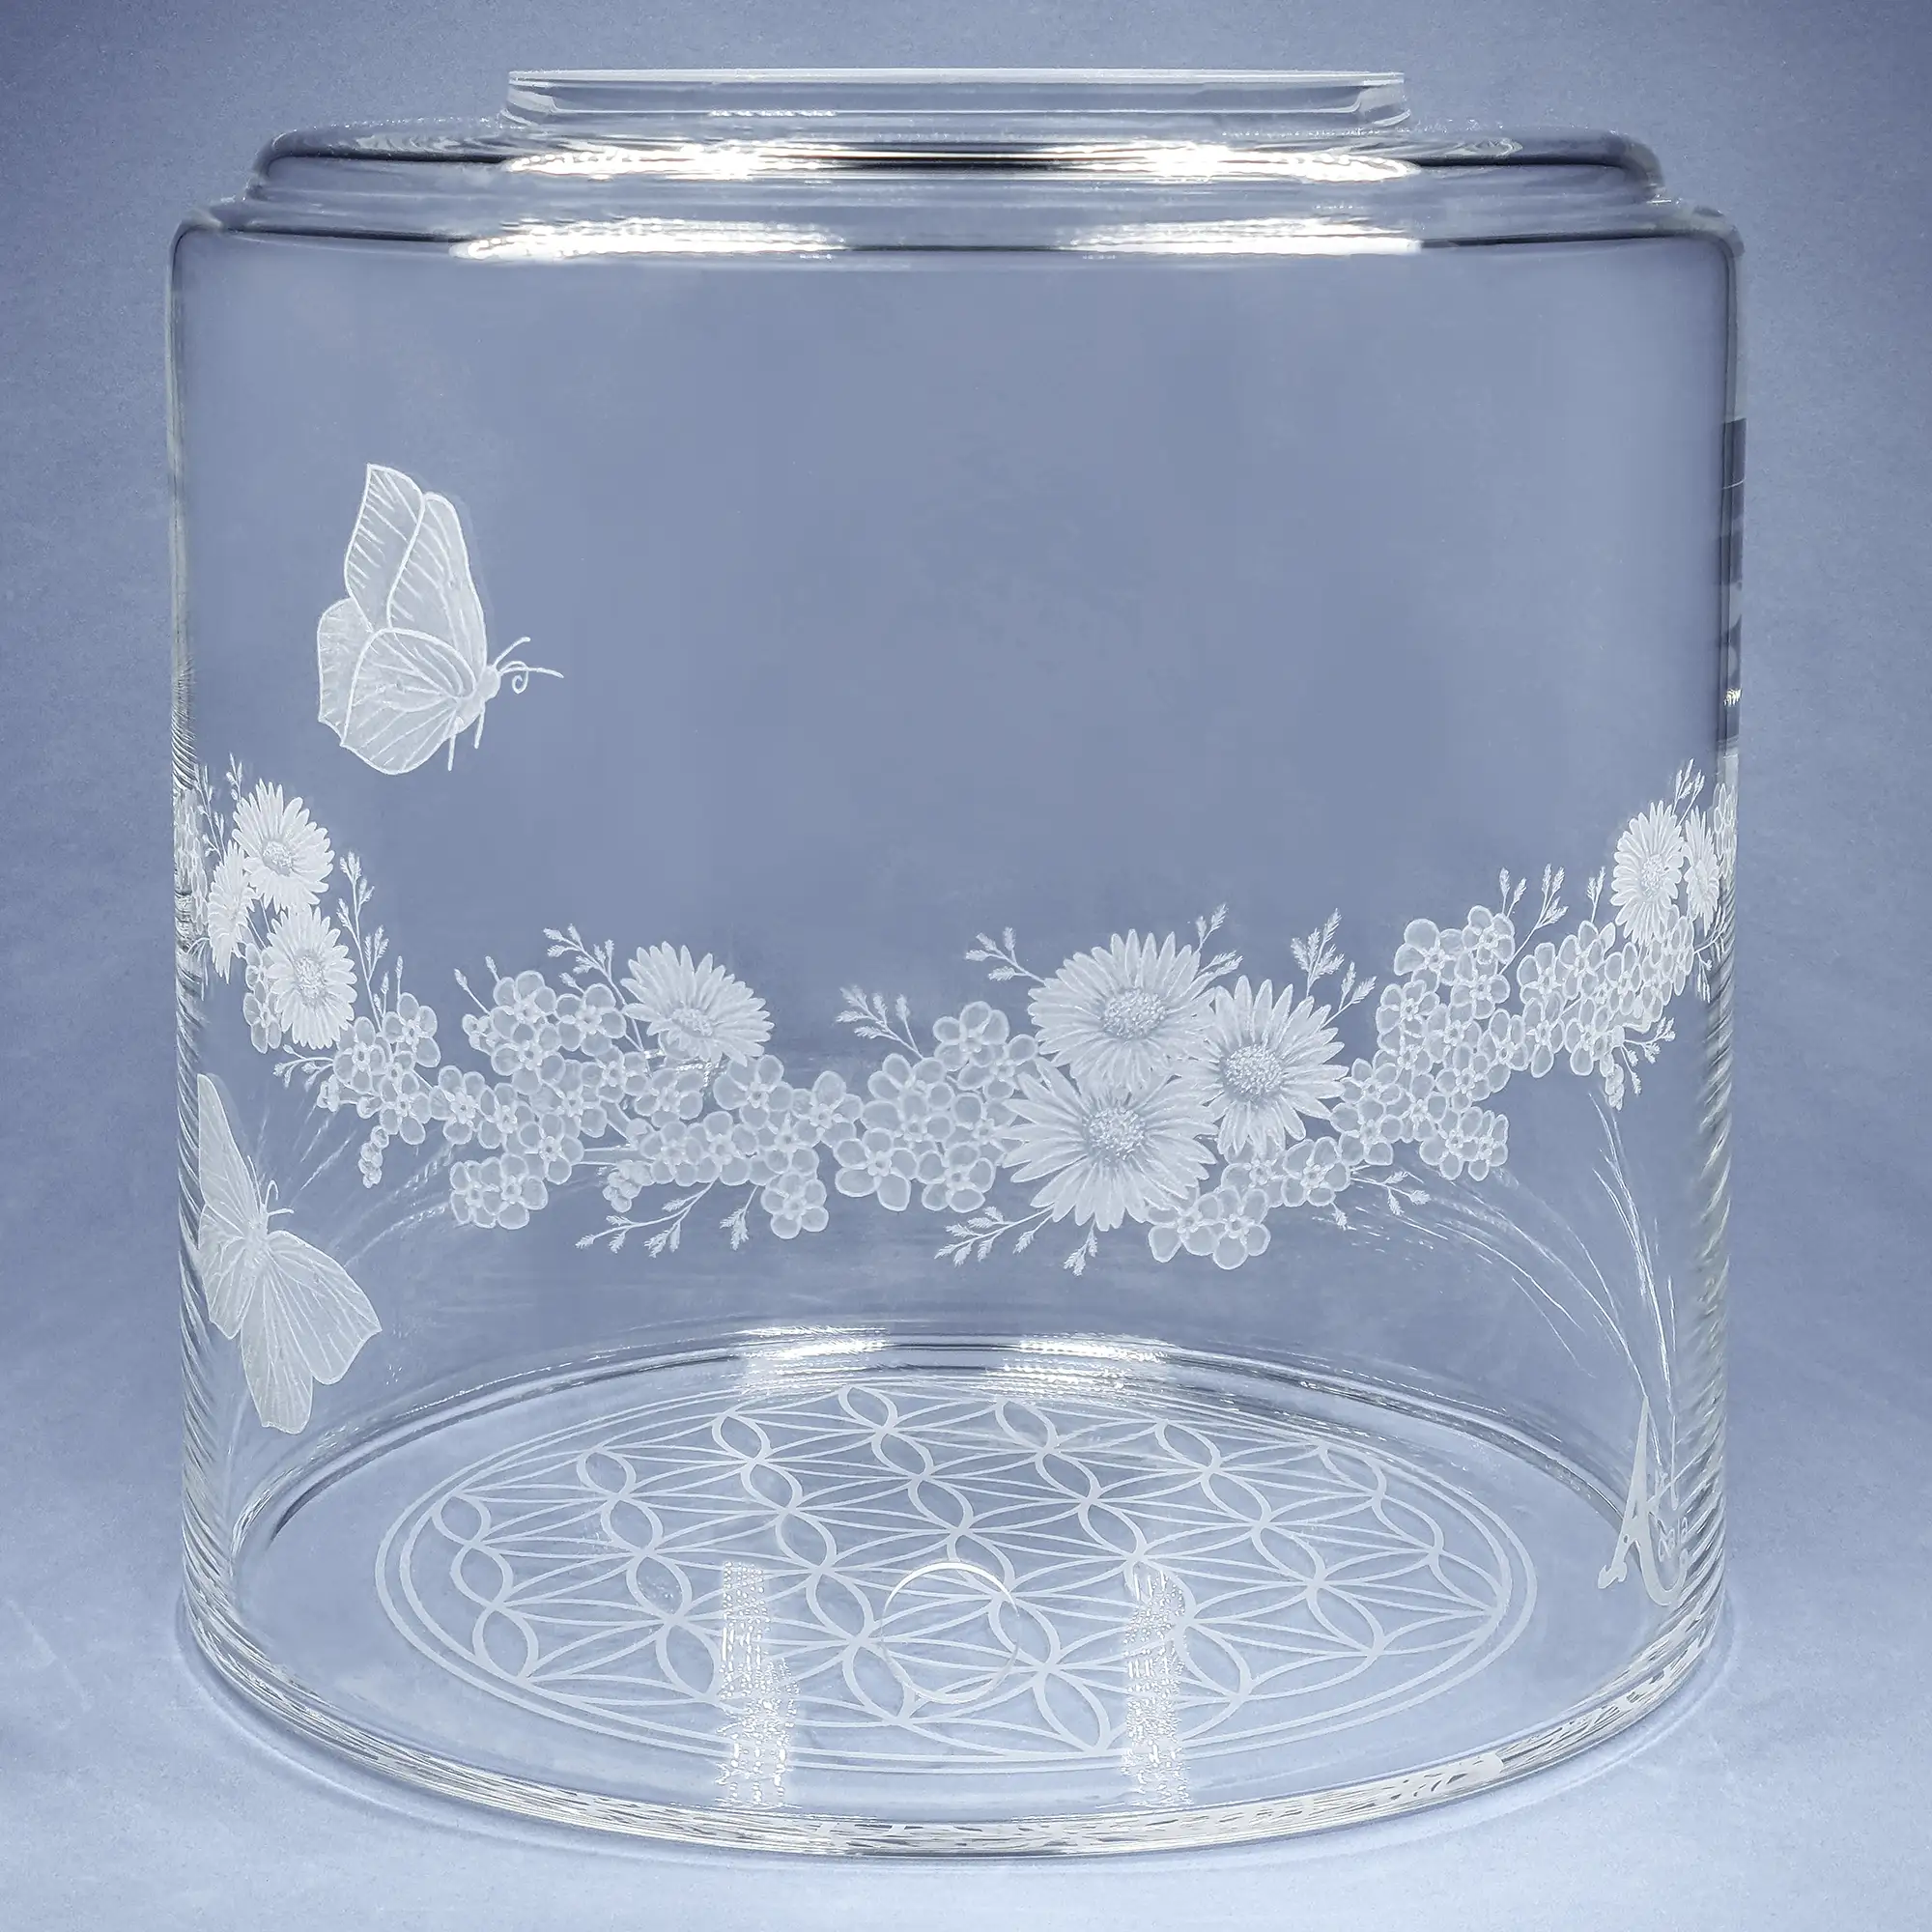 Vorratstank aus Glas für einen 8Liter Acala Wasserfilter in klarem Glas mit dem gravierten Kranz,umlaufende um das runde Glas.In dem Granz sind Vergissmeinnicht, Schmetterlinge und Gänseblümchen.Vorderansicht.